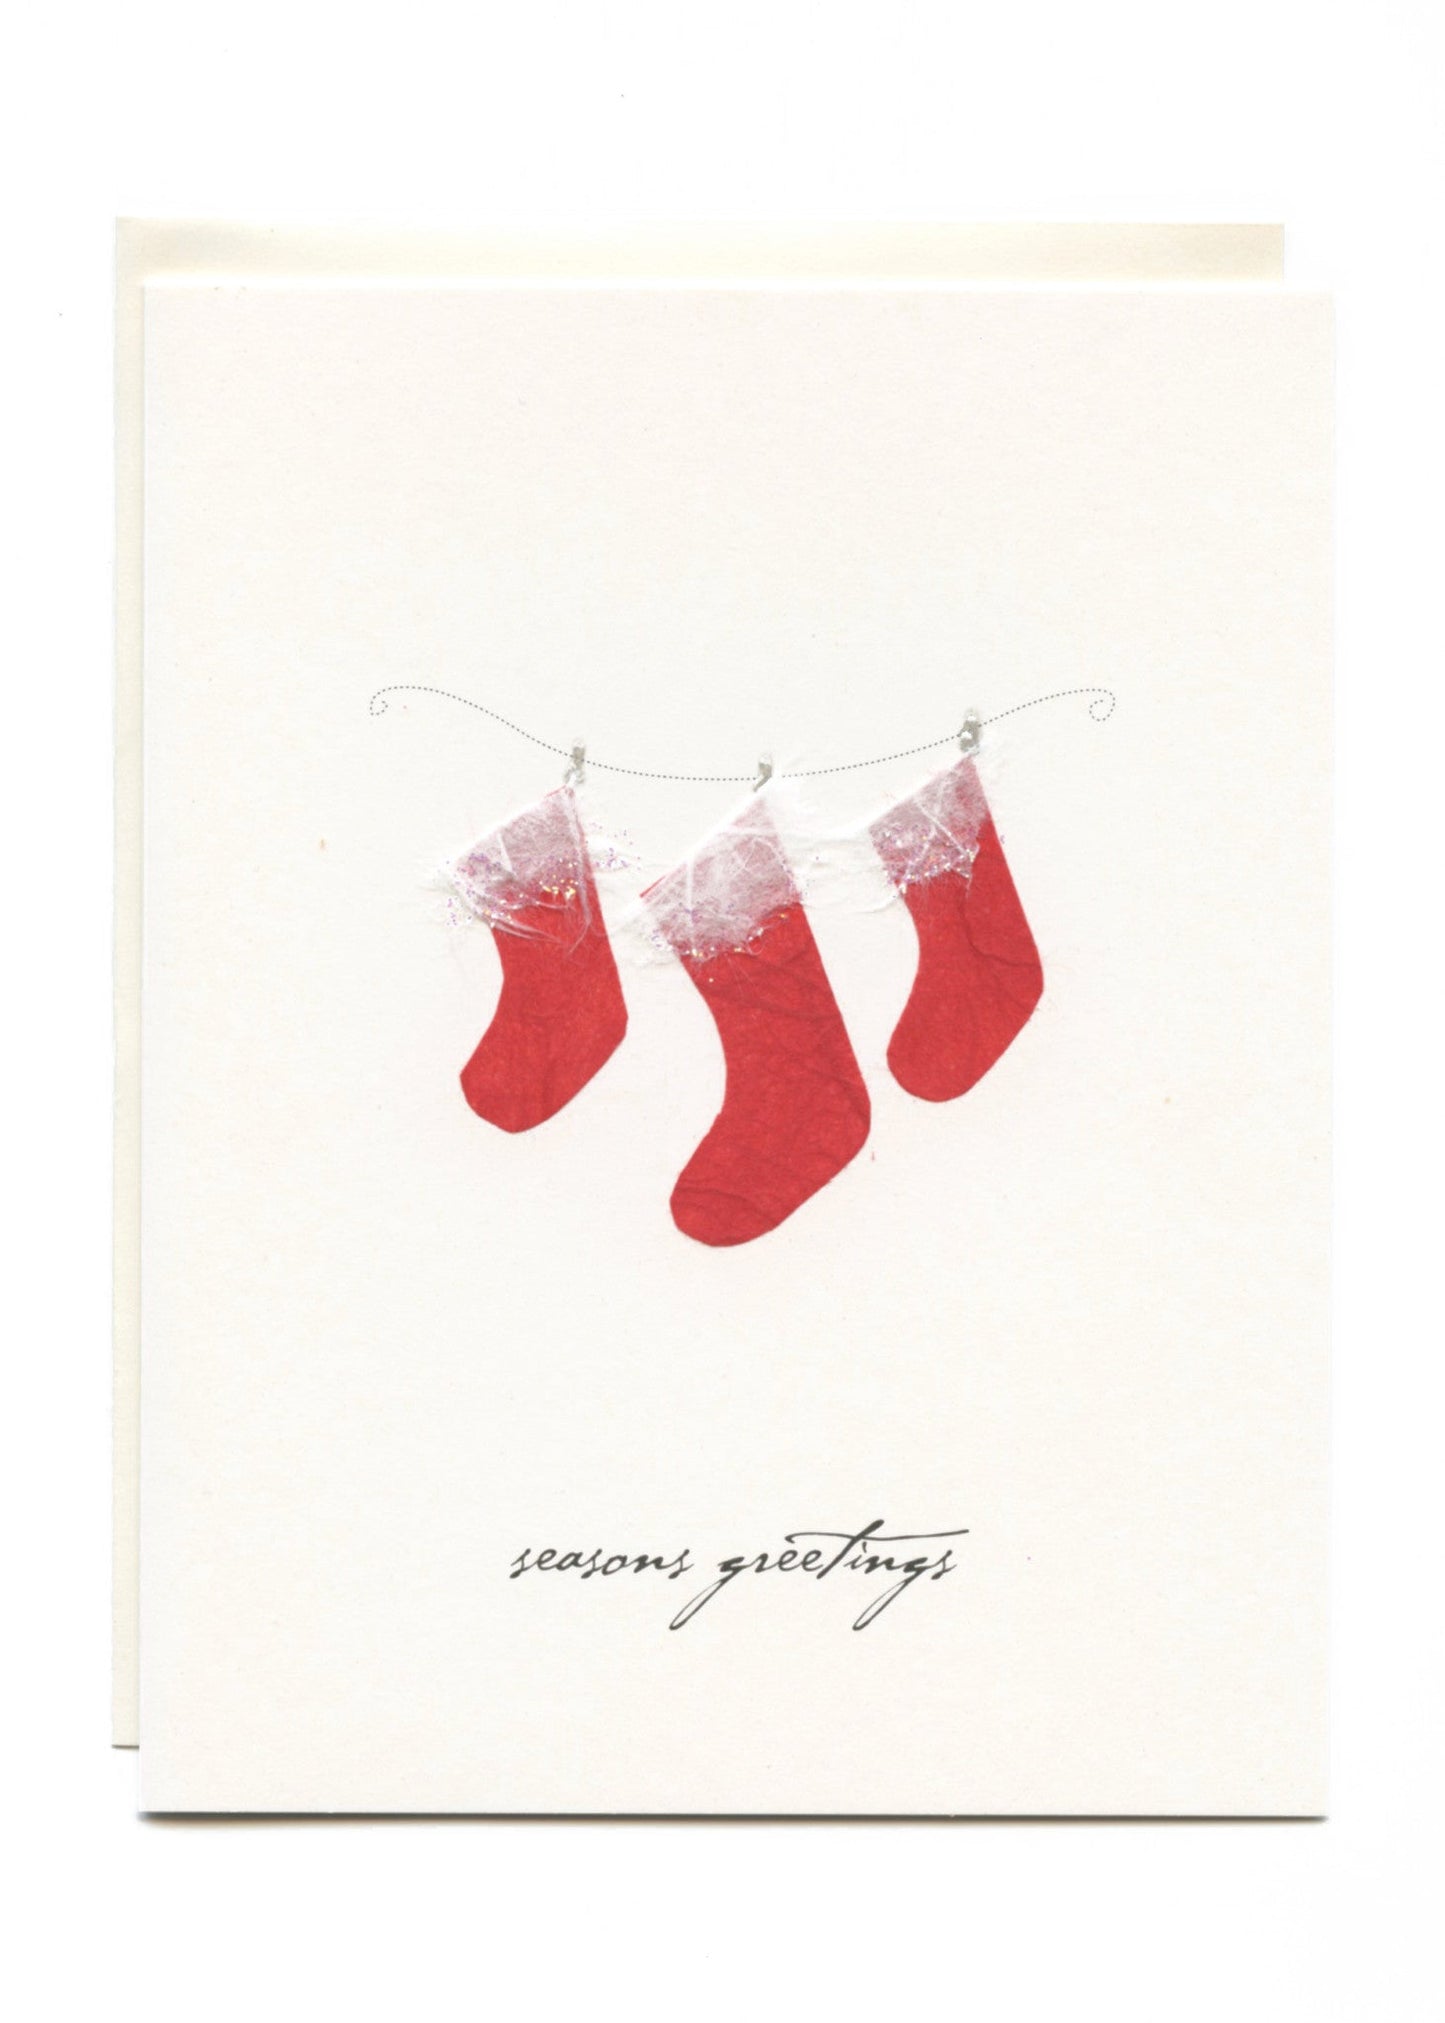 "Season's Greetings"  Three Stockings